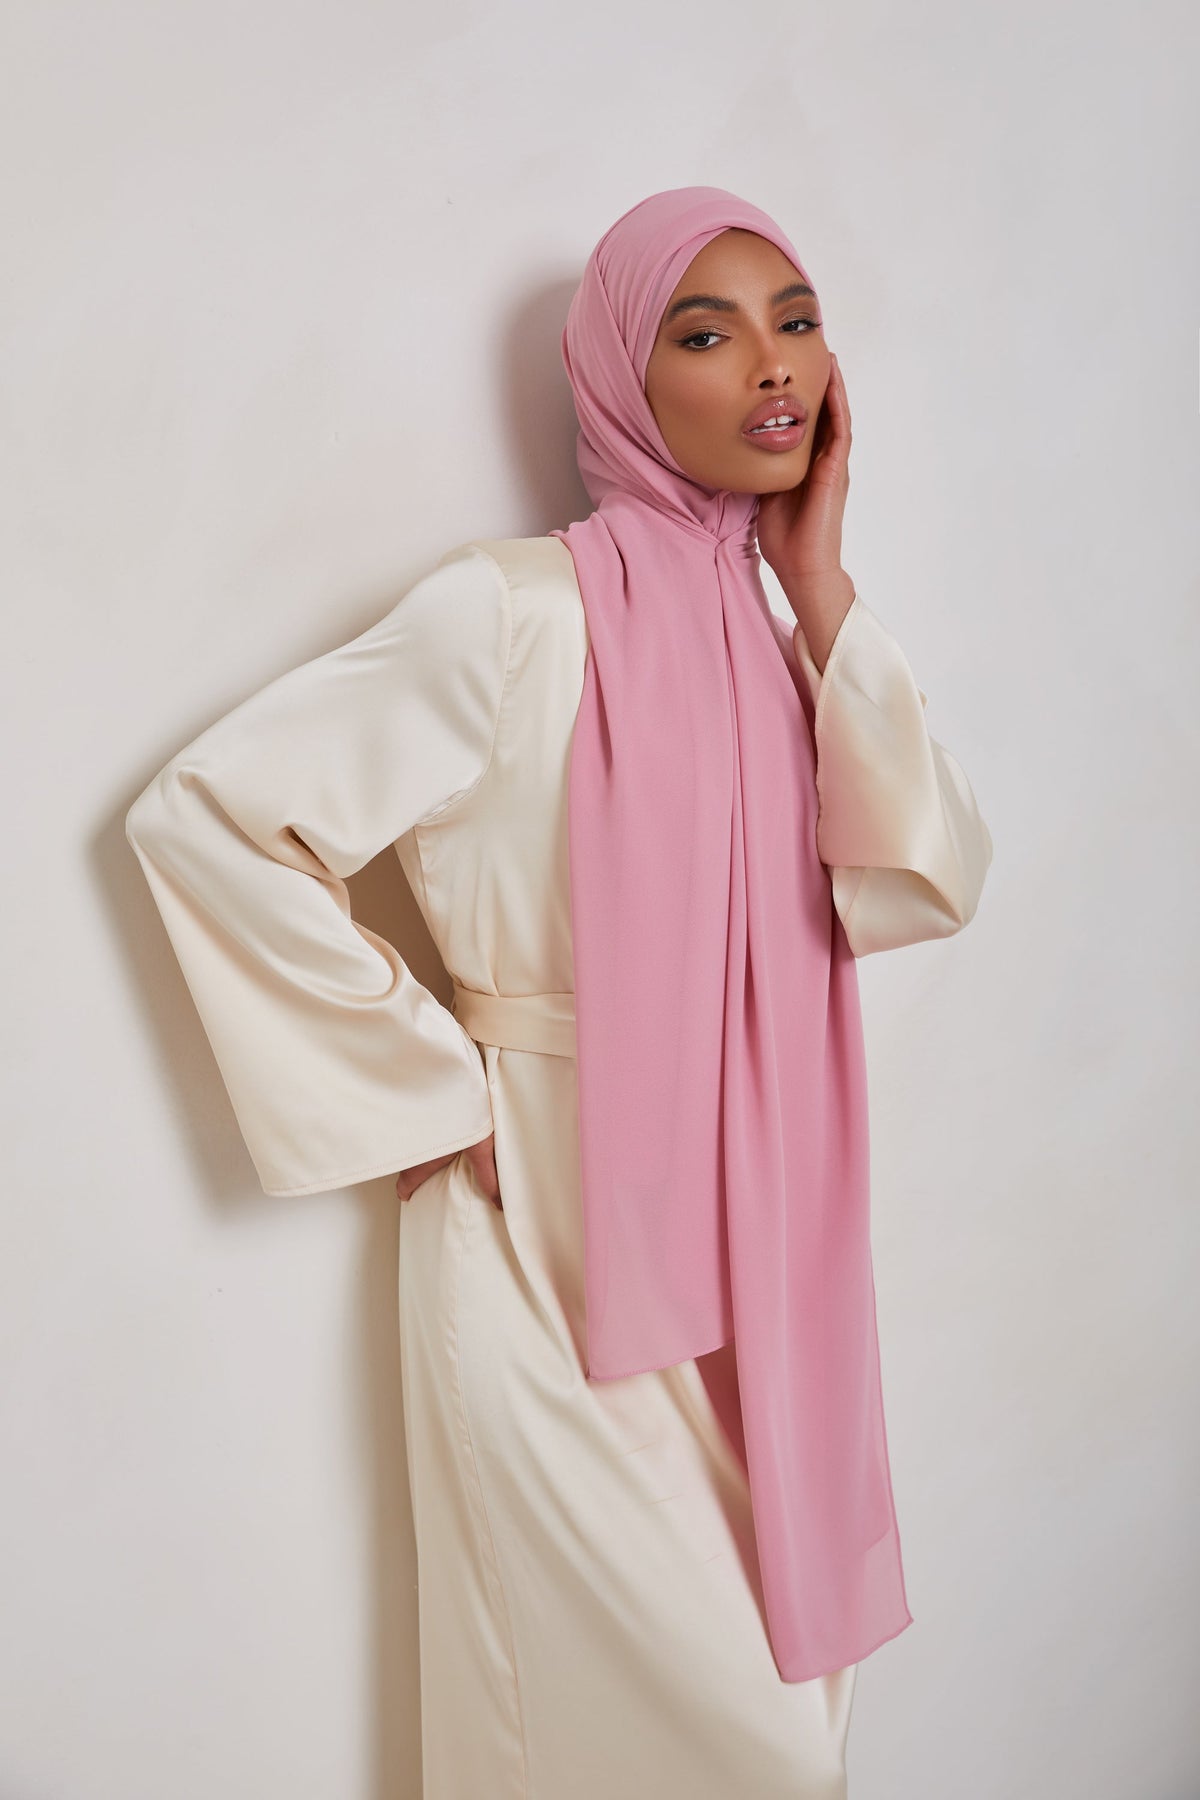 Essential Chiffon Hijab - Bridal Pink Scarves & Shawls epschoolboard 